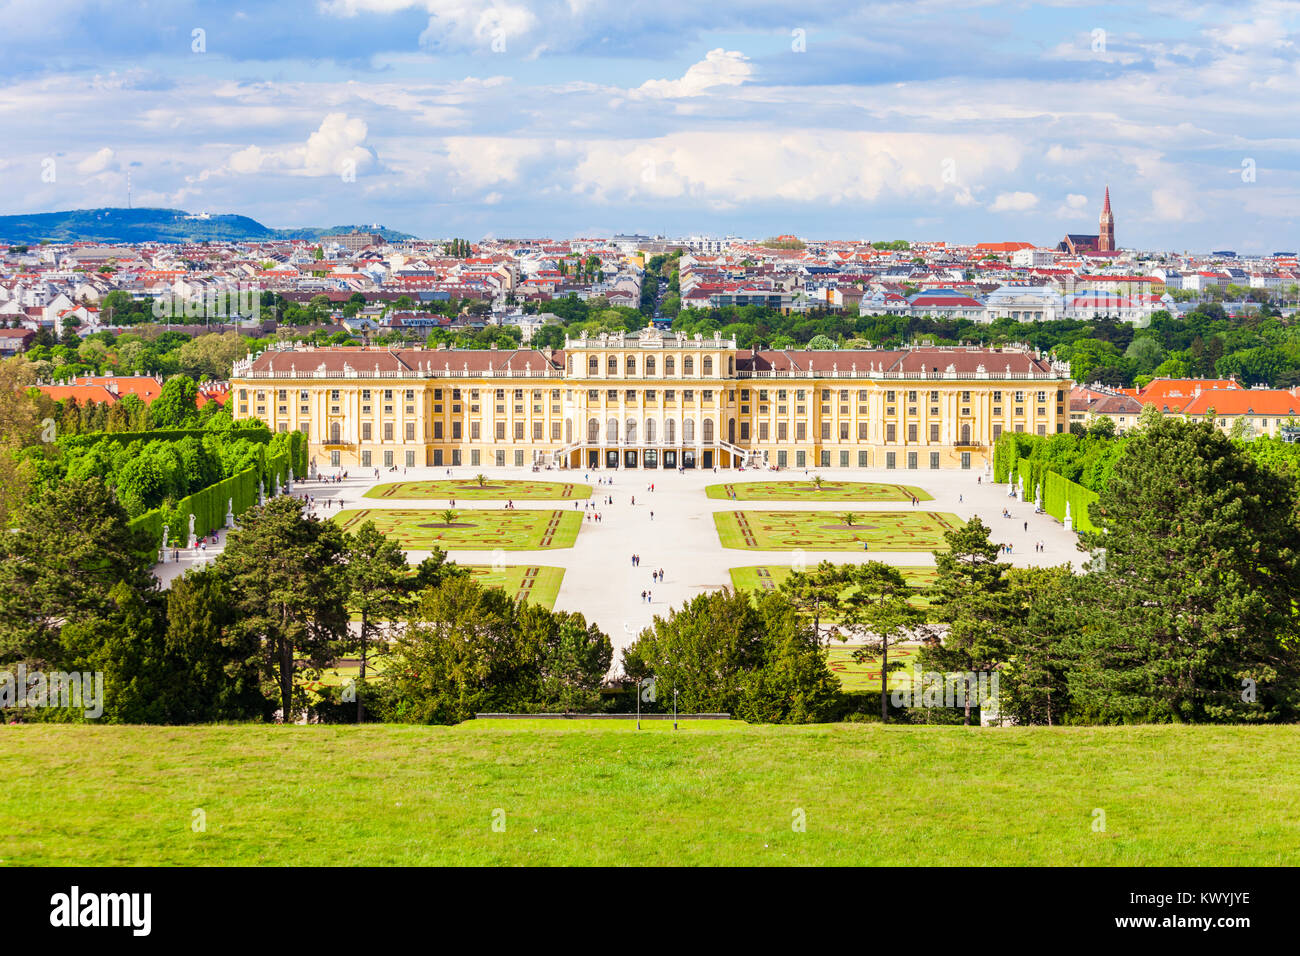 Palacio de Schonbrunn o Schloss Schönbrunn es una residencia de verano imperial en Viena, Austria. Palacio de Schonbrunn es una importante atracción turística en Vienn Foto de stock